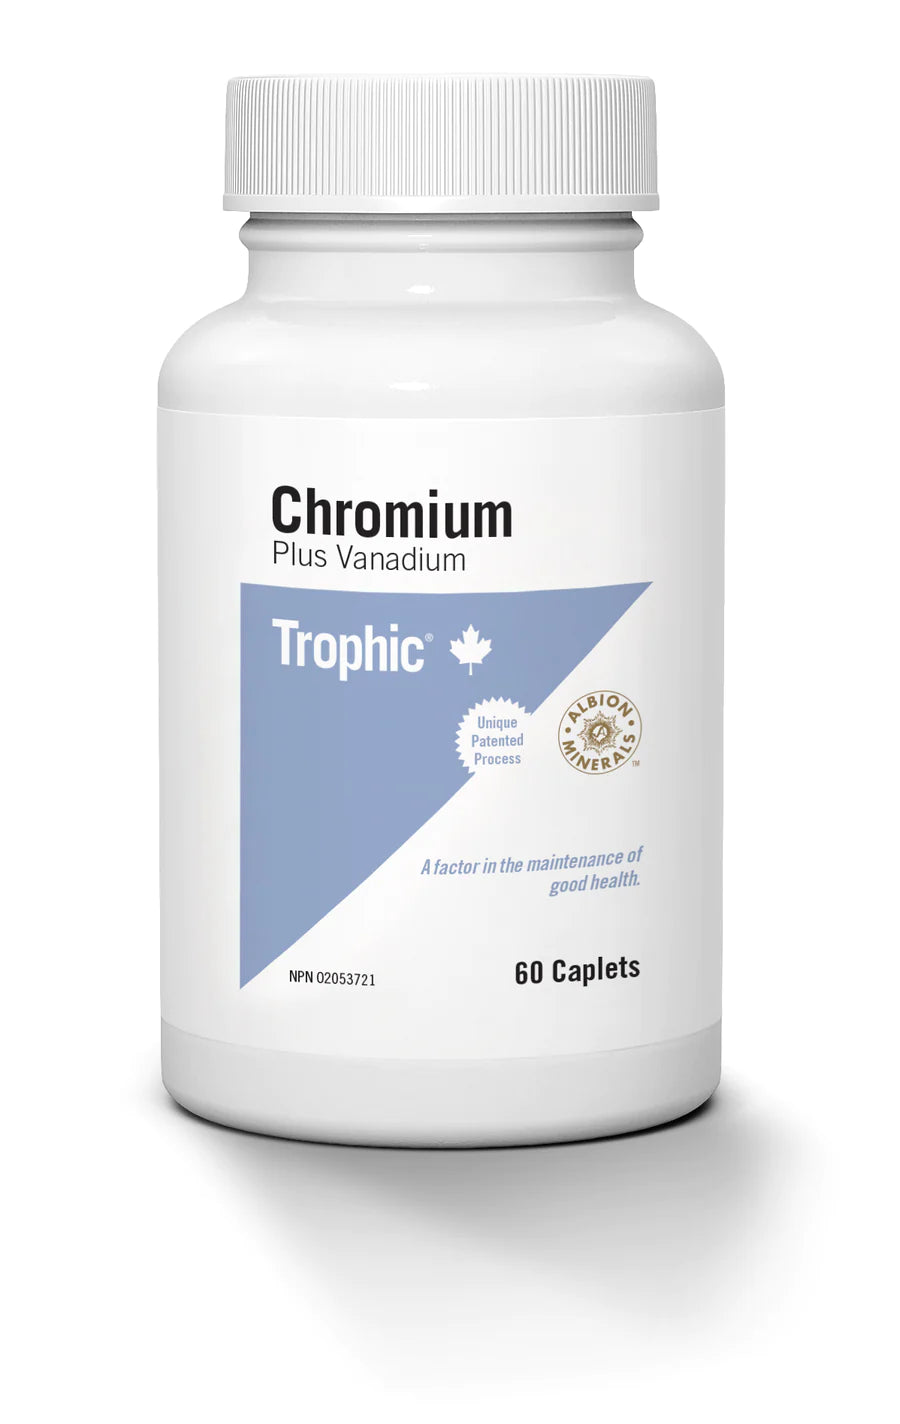 Chromium Plus Vanadium by Trophic, 60 caps